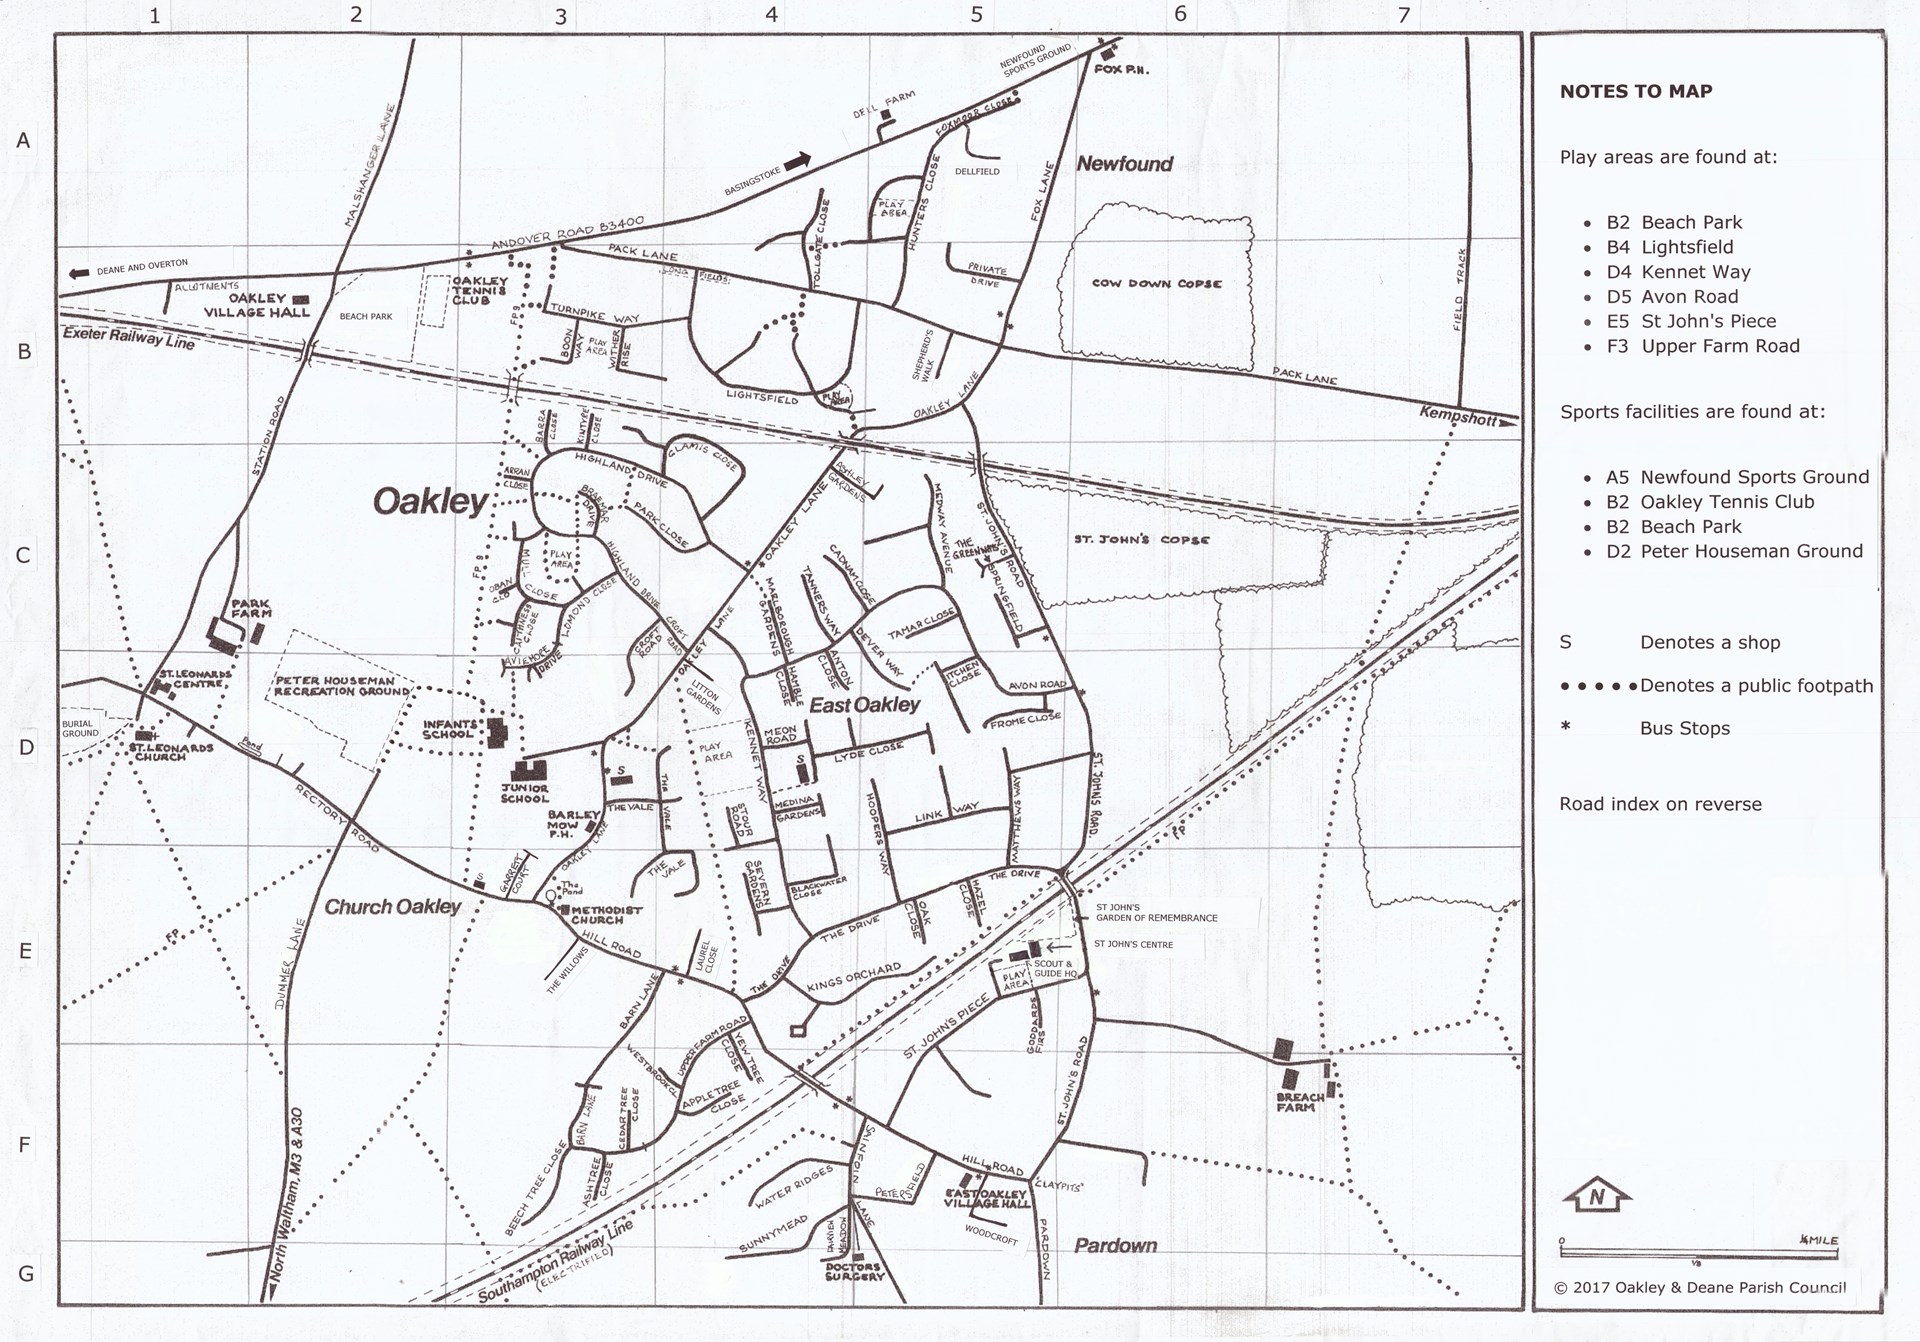 Street plan of the village of Oakley